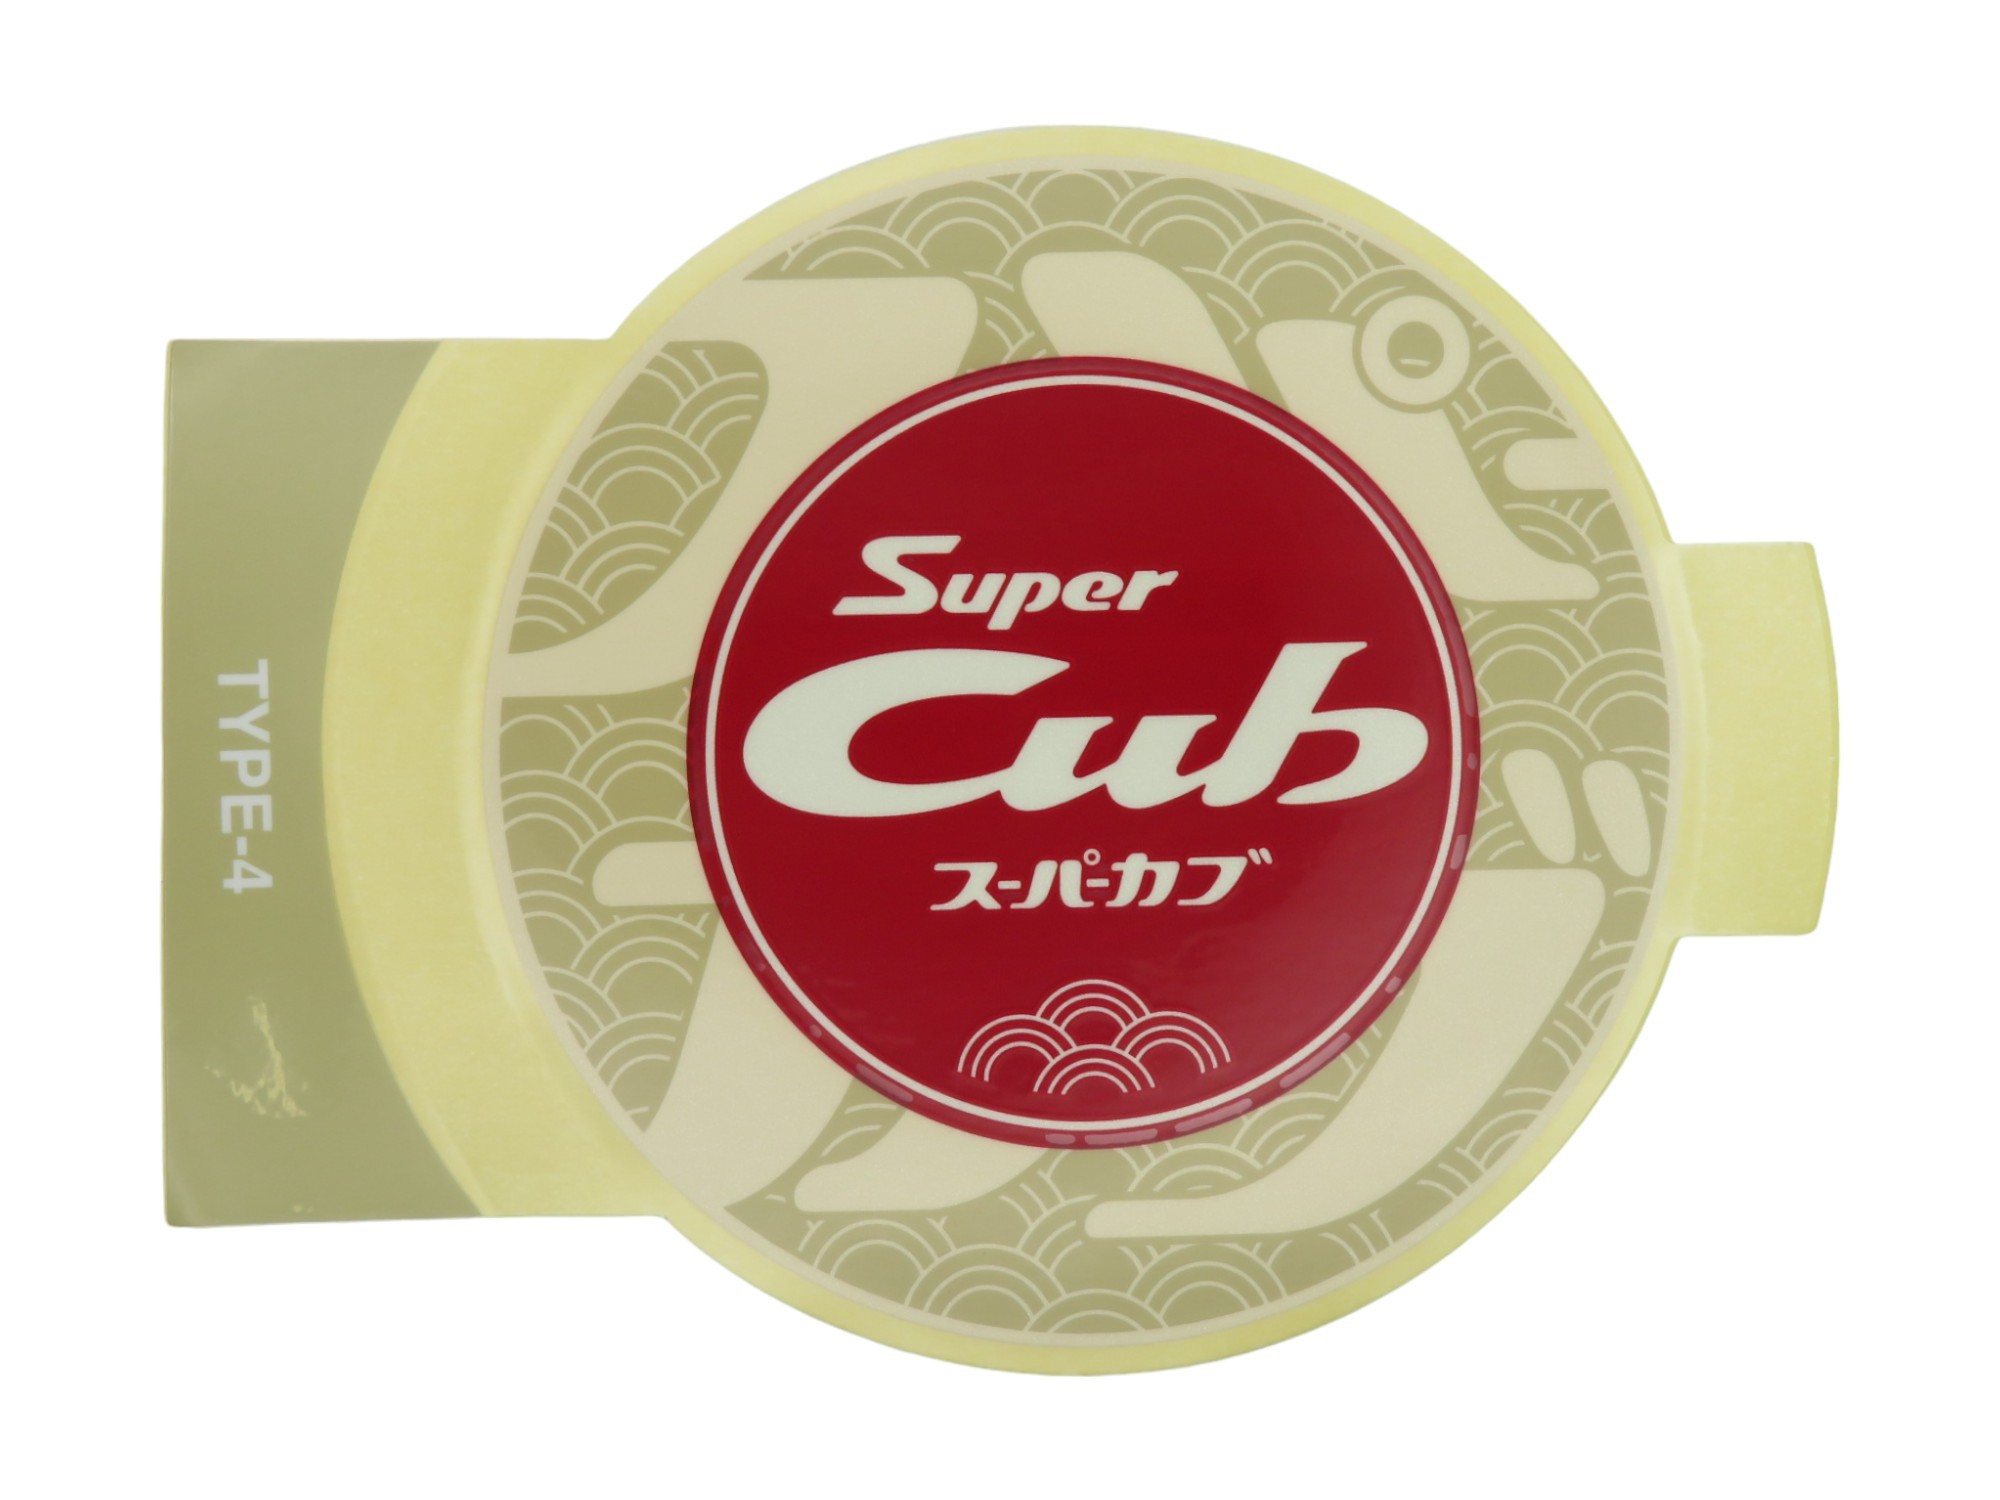 ホンダ 純正 Super Cub スーパーカブ レッグシールド ステッカー 直径9cm 各色 868...